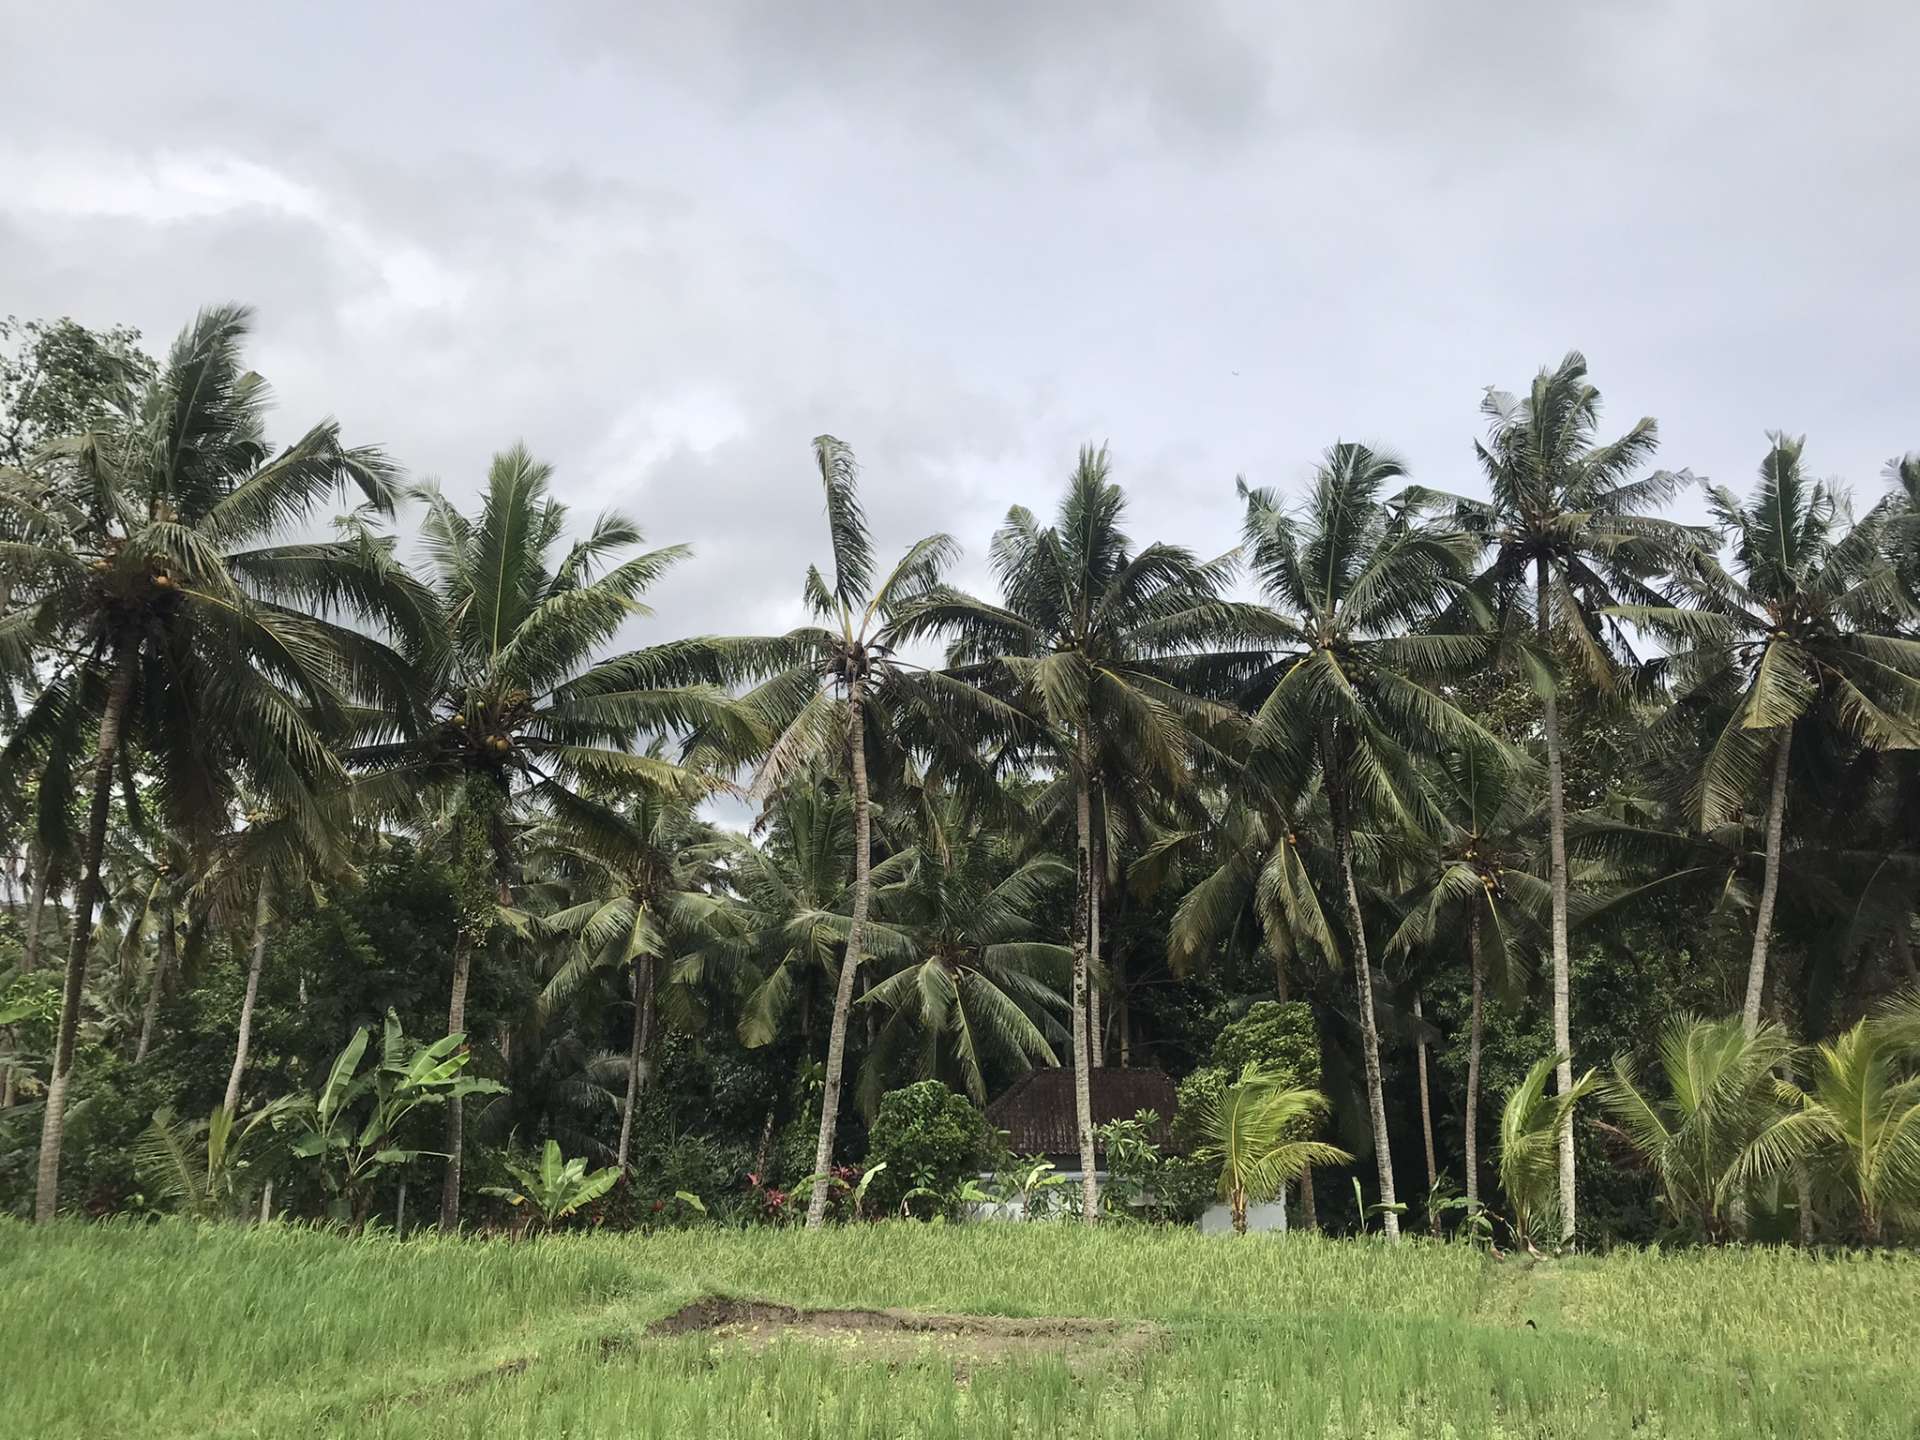 内陸は田園風景
川沿いに生育する
椰子の木が見られます